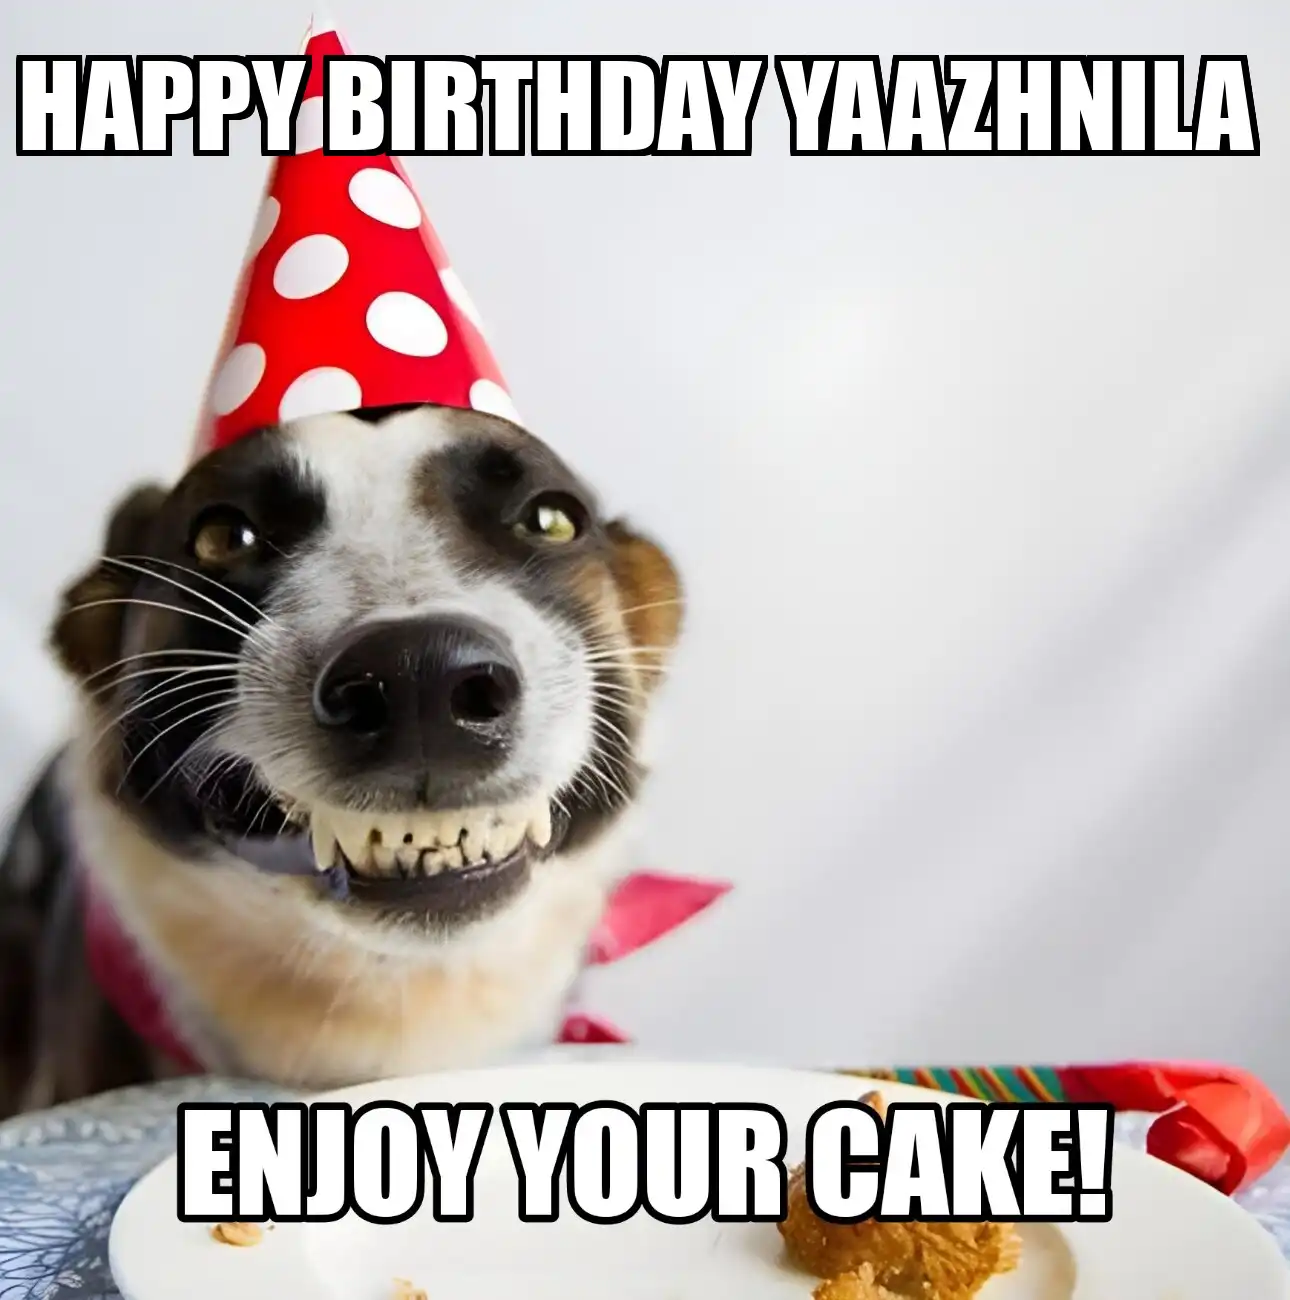 Happy Birthday Yaazhnila Enjoy Your Cake Dog Meme